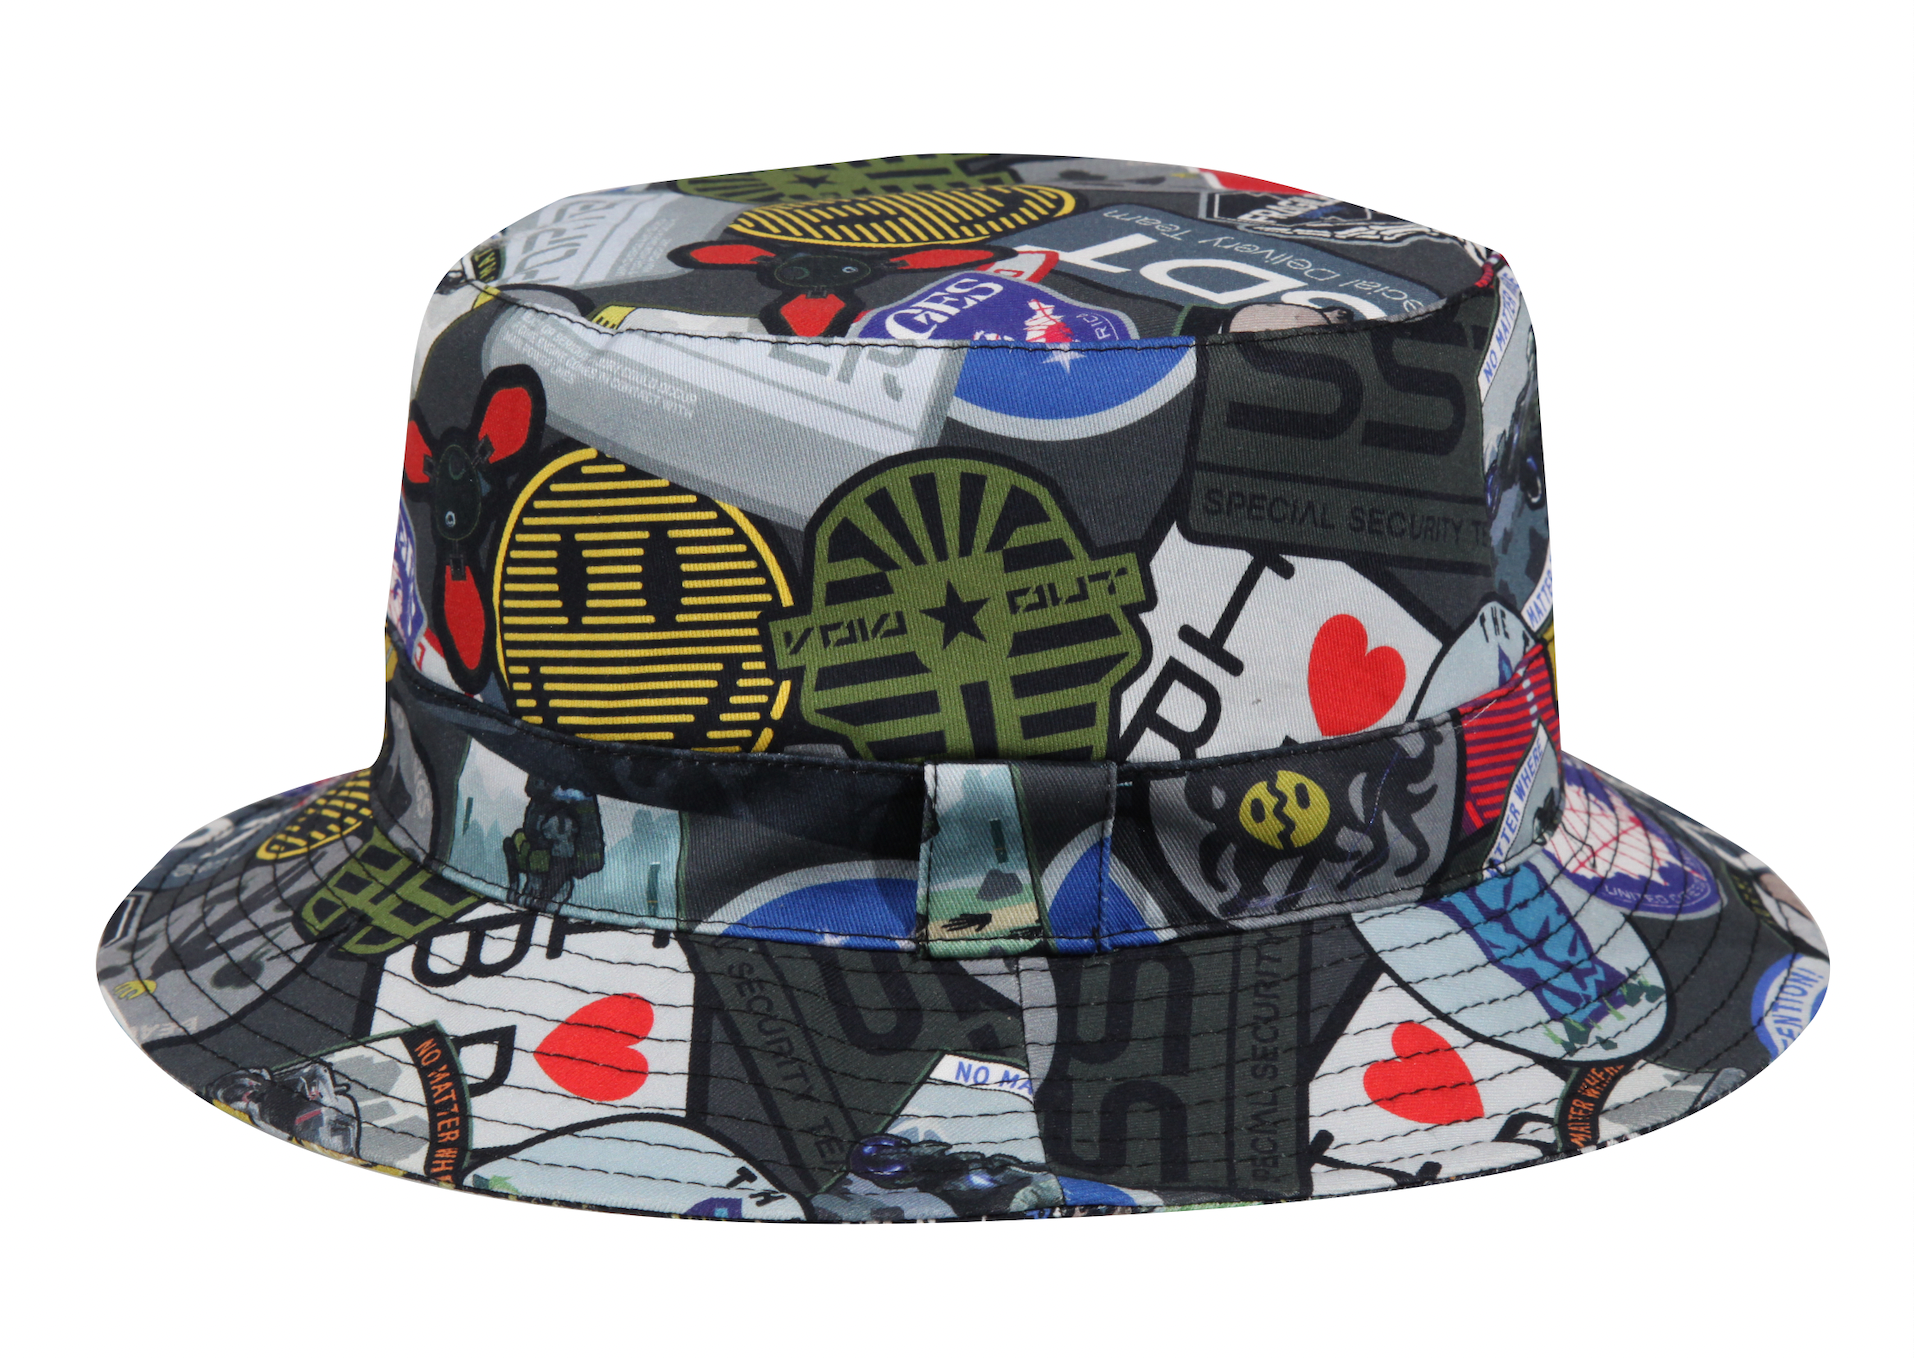 Anda juga dapat membeli topi ember yang terinspirasi dari Death Stranding seharga £65